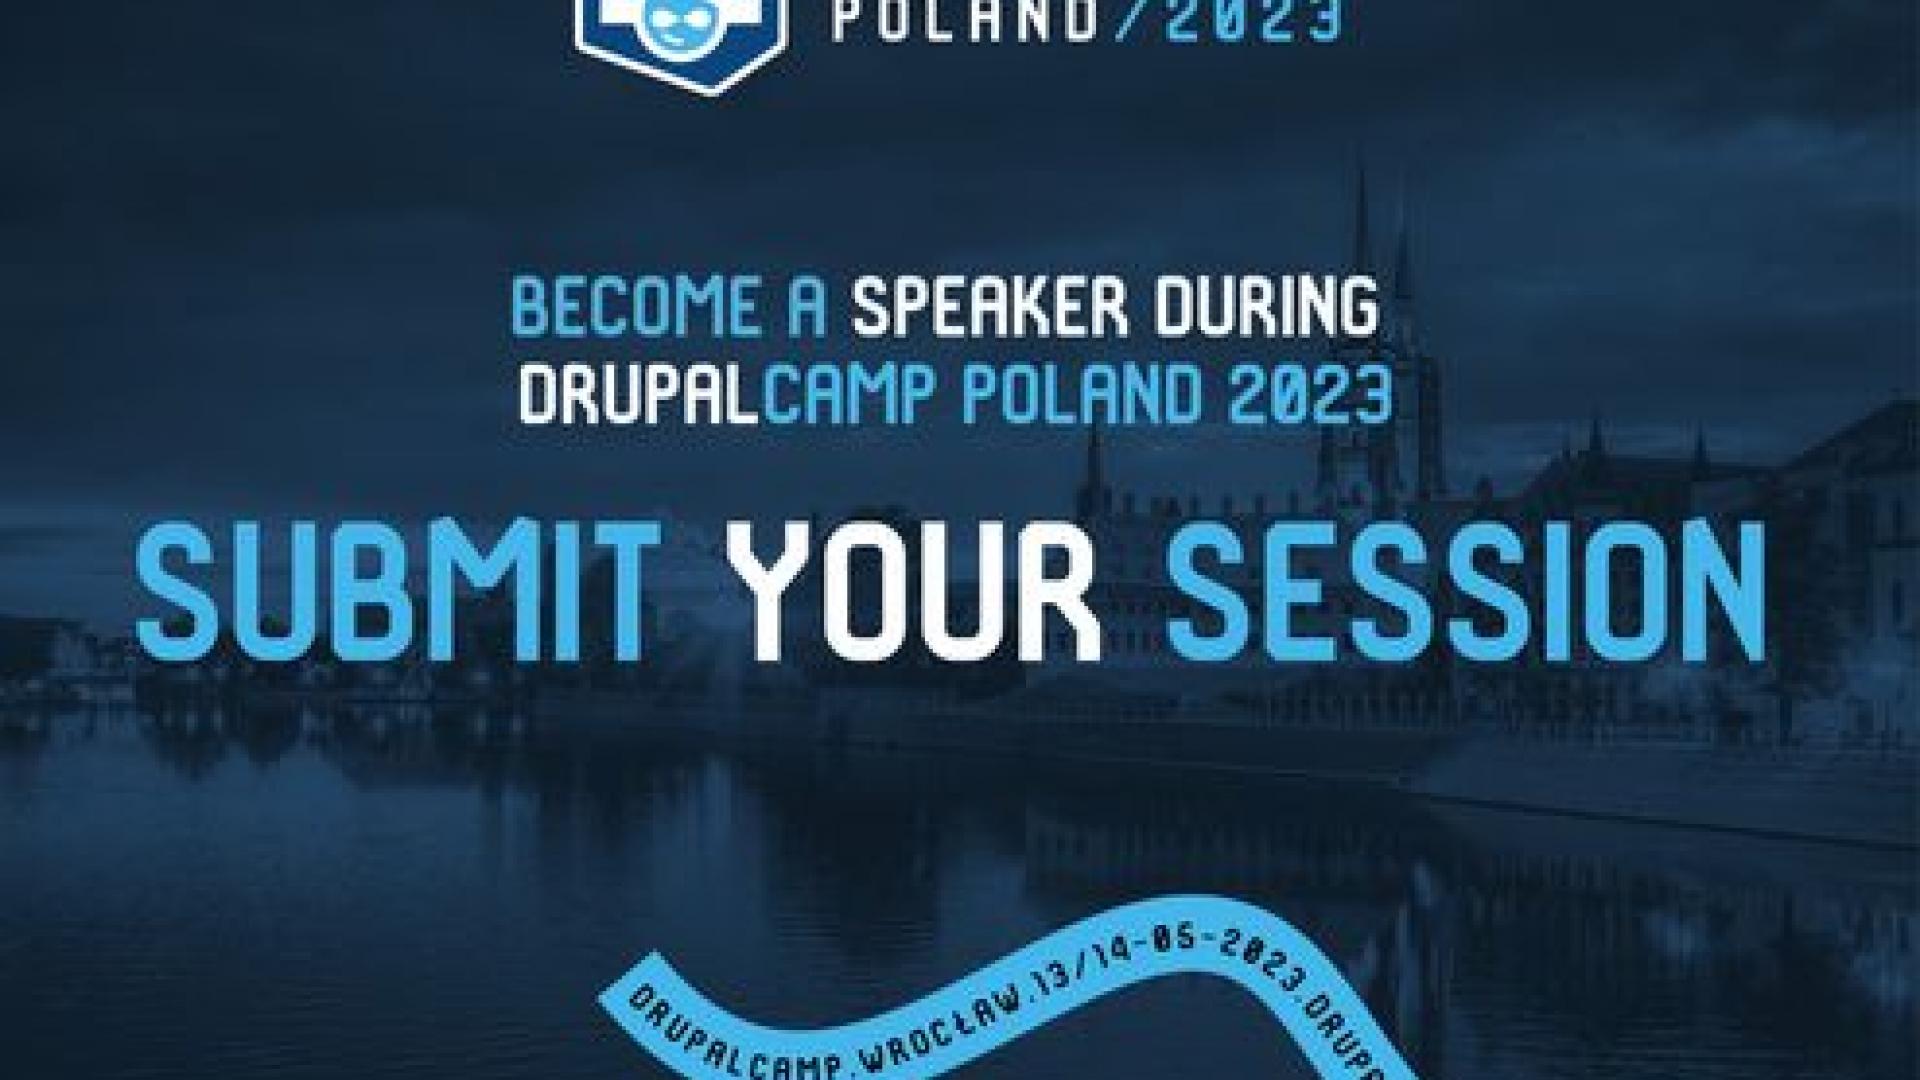 DrupalCamp Poland 2023